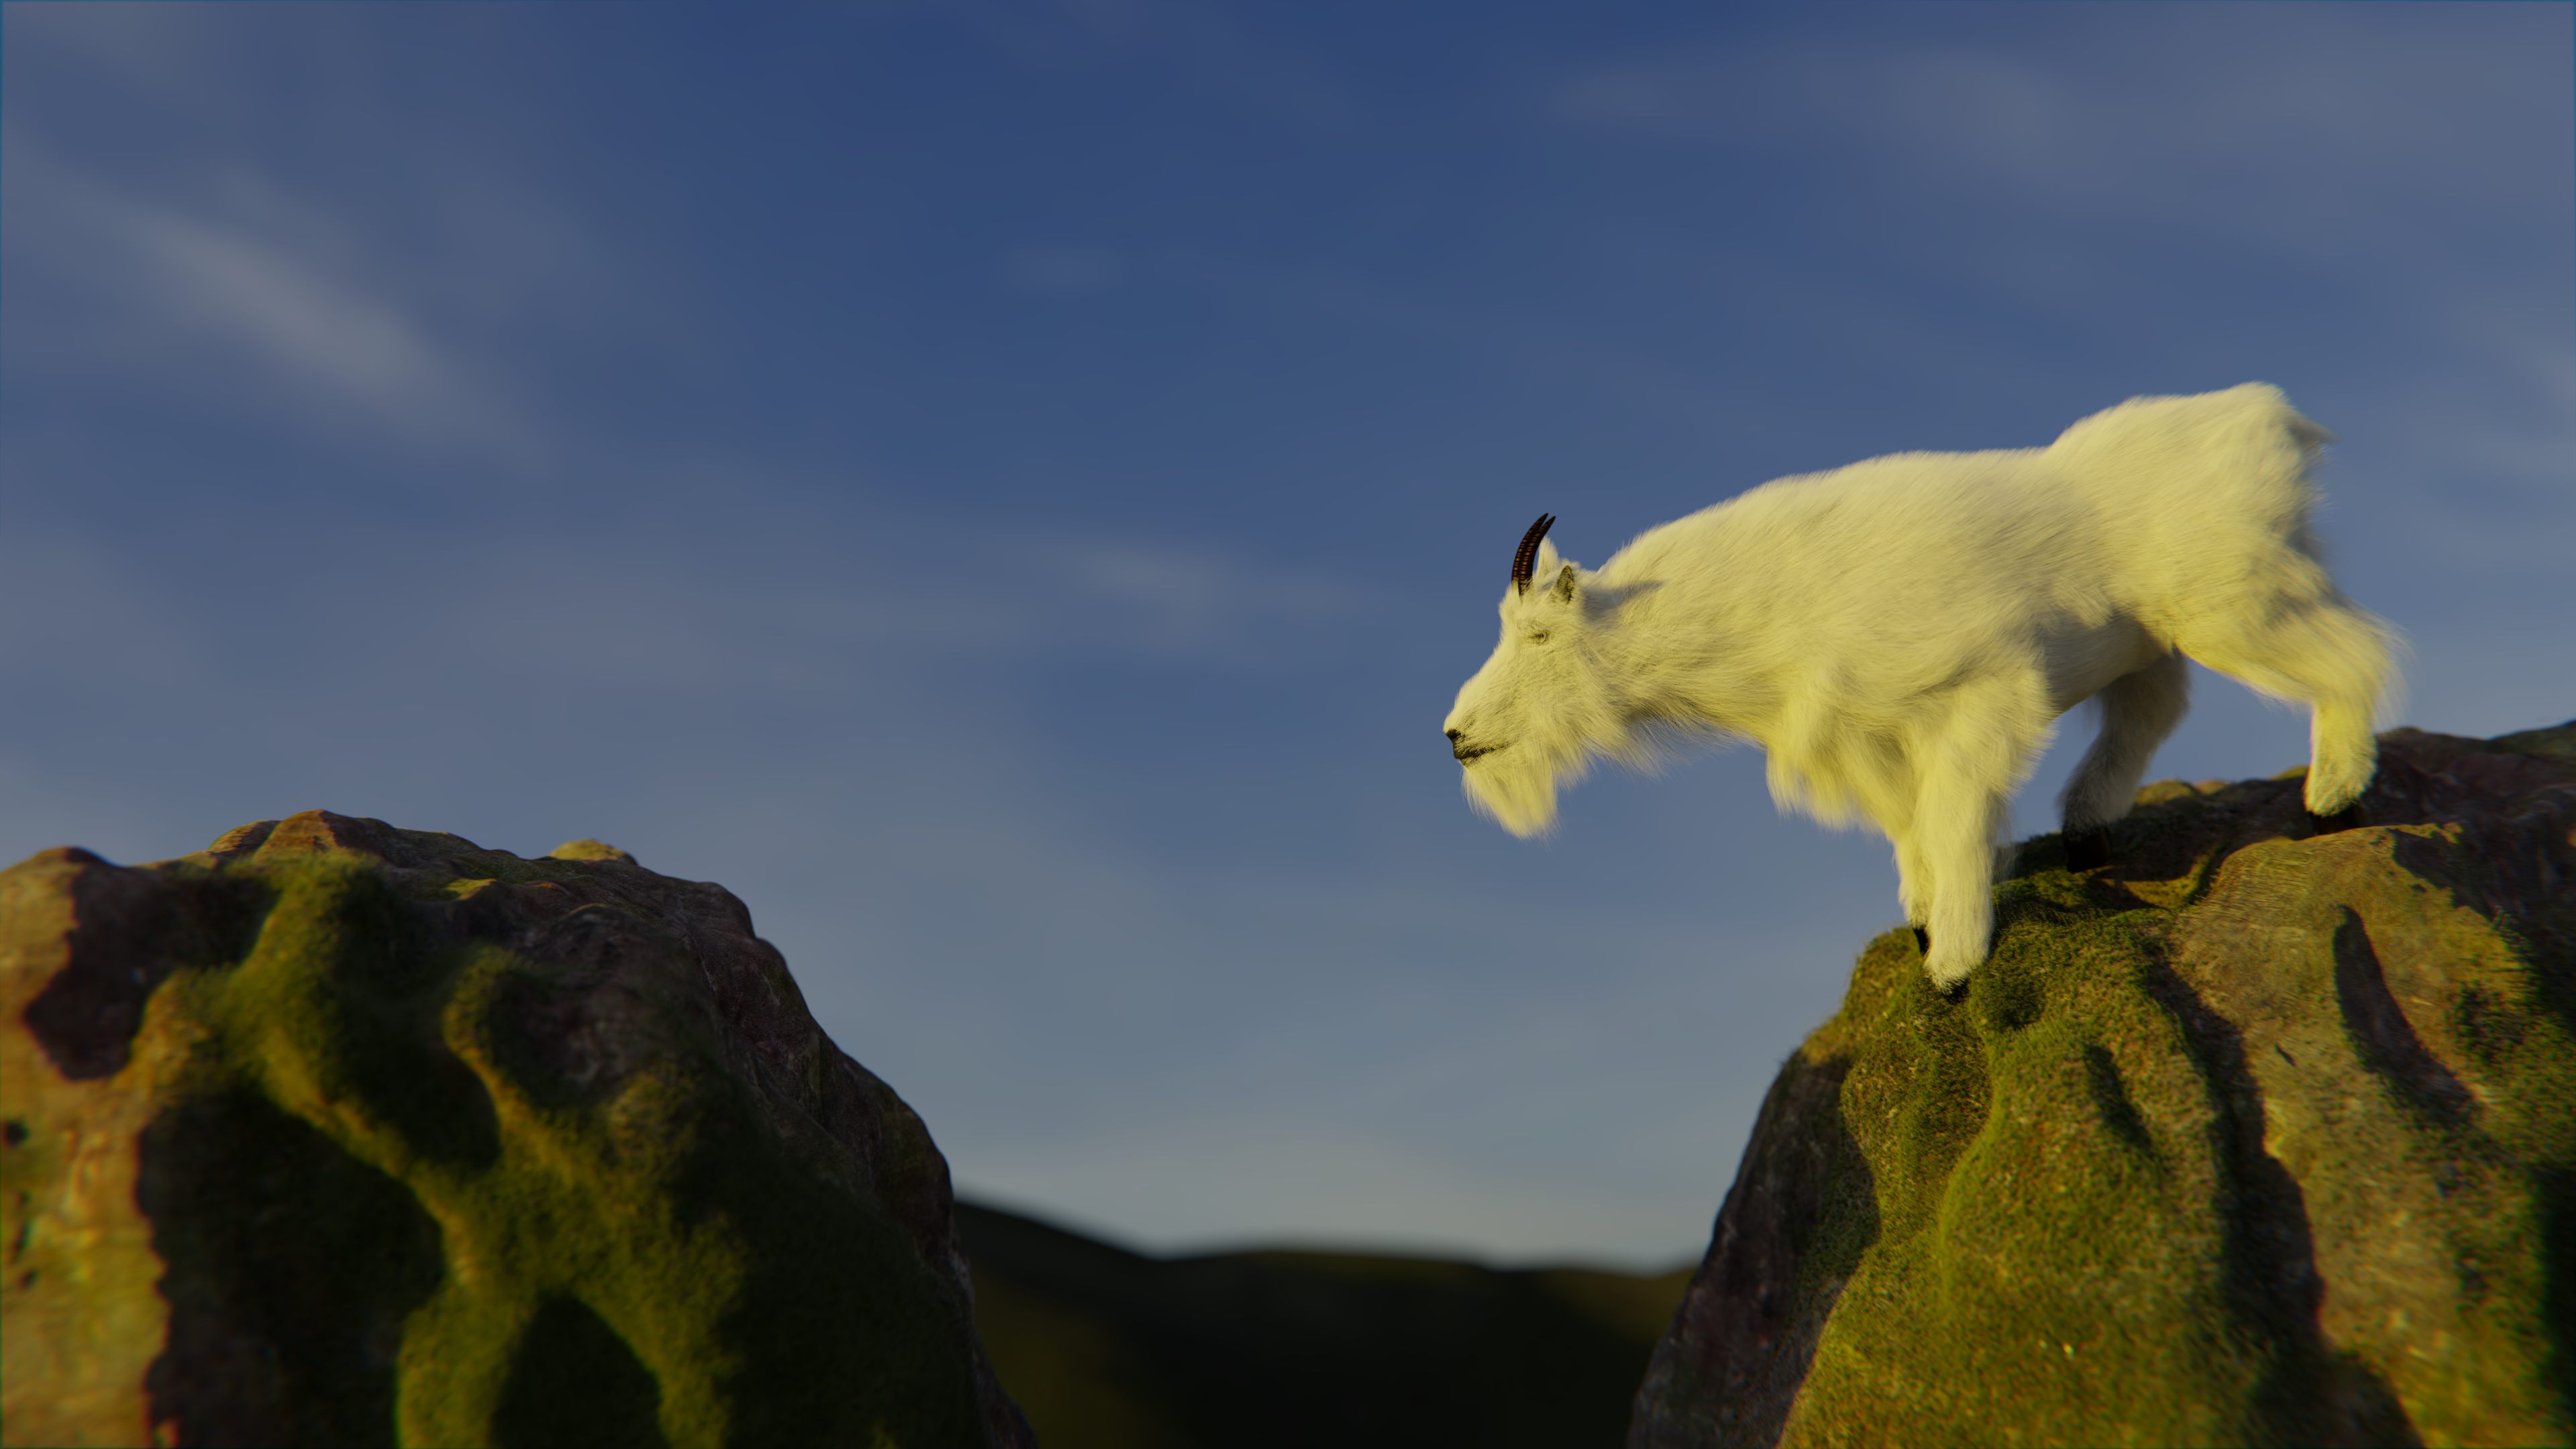 Mountain goat, Exciting project, Blender community, Artistic achievement, 3840x2160 4K Desktop